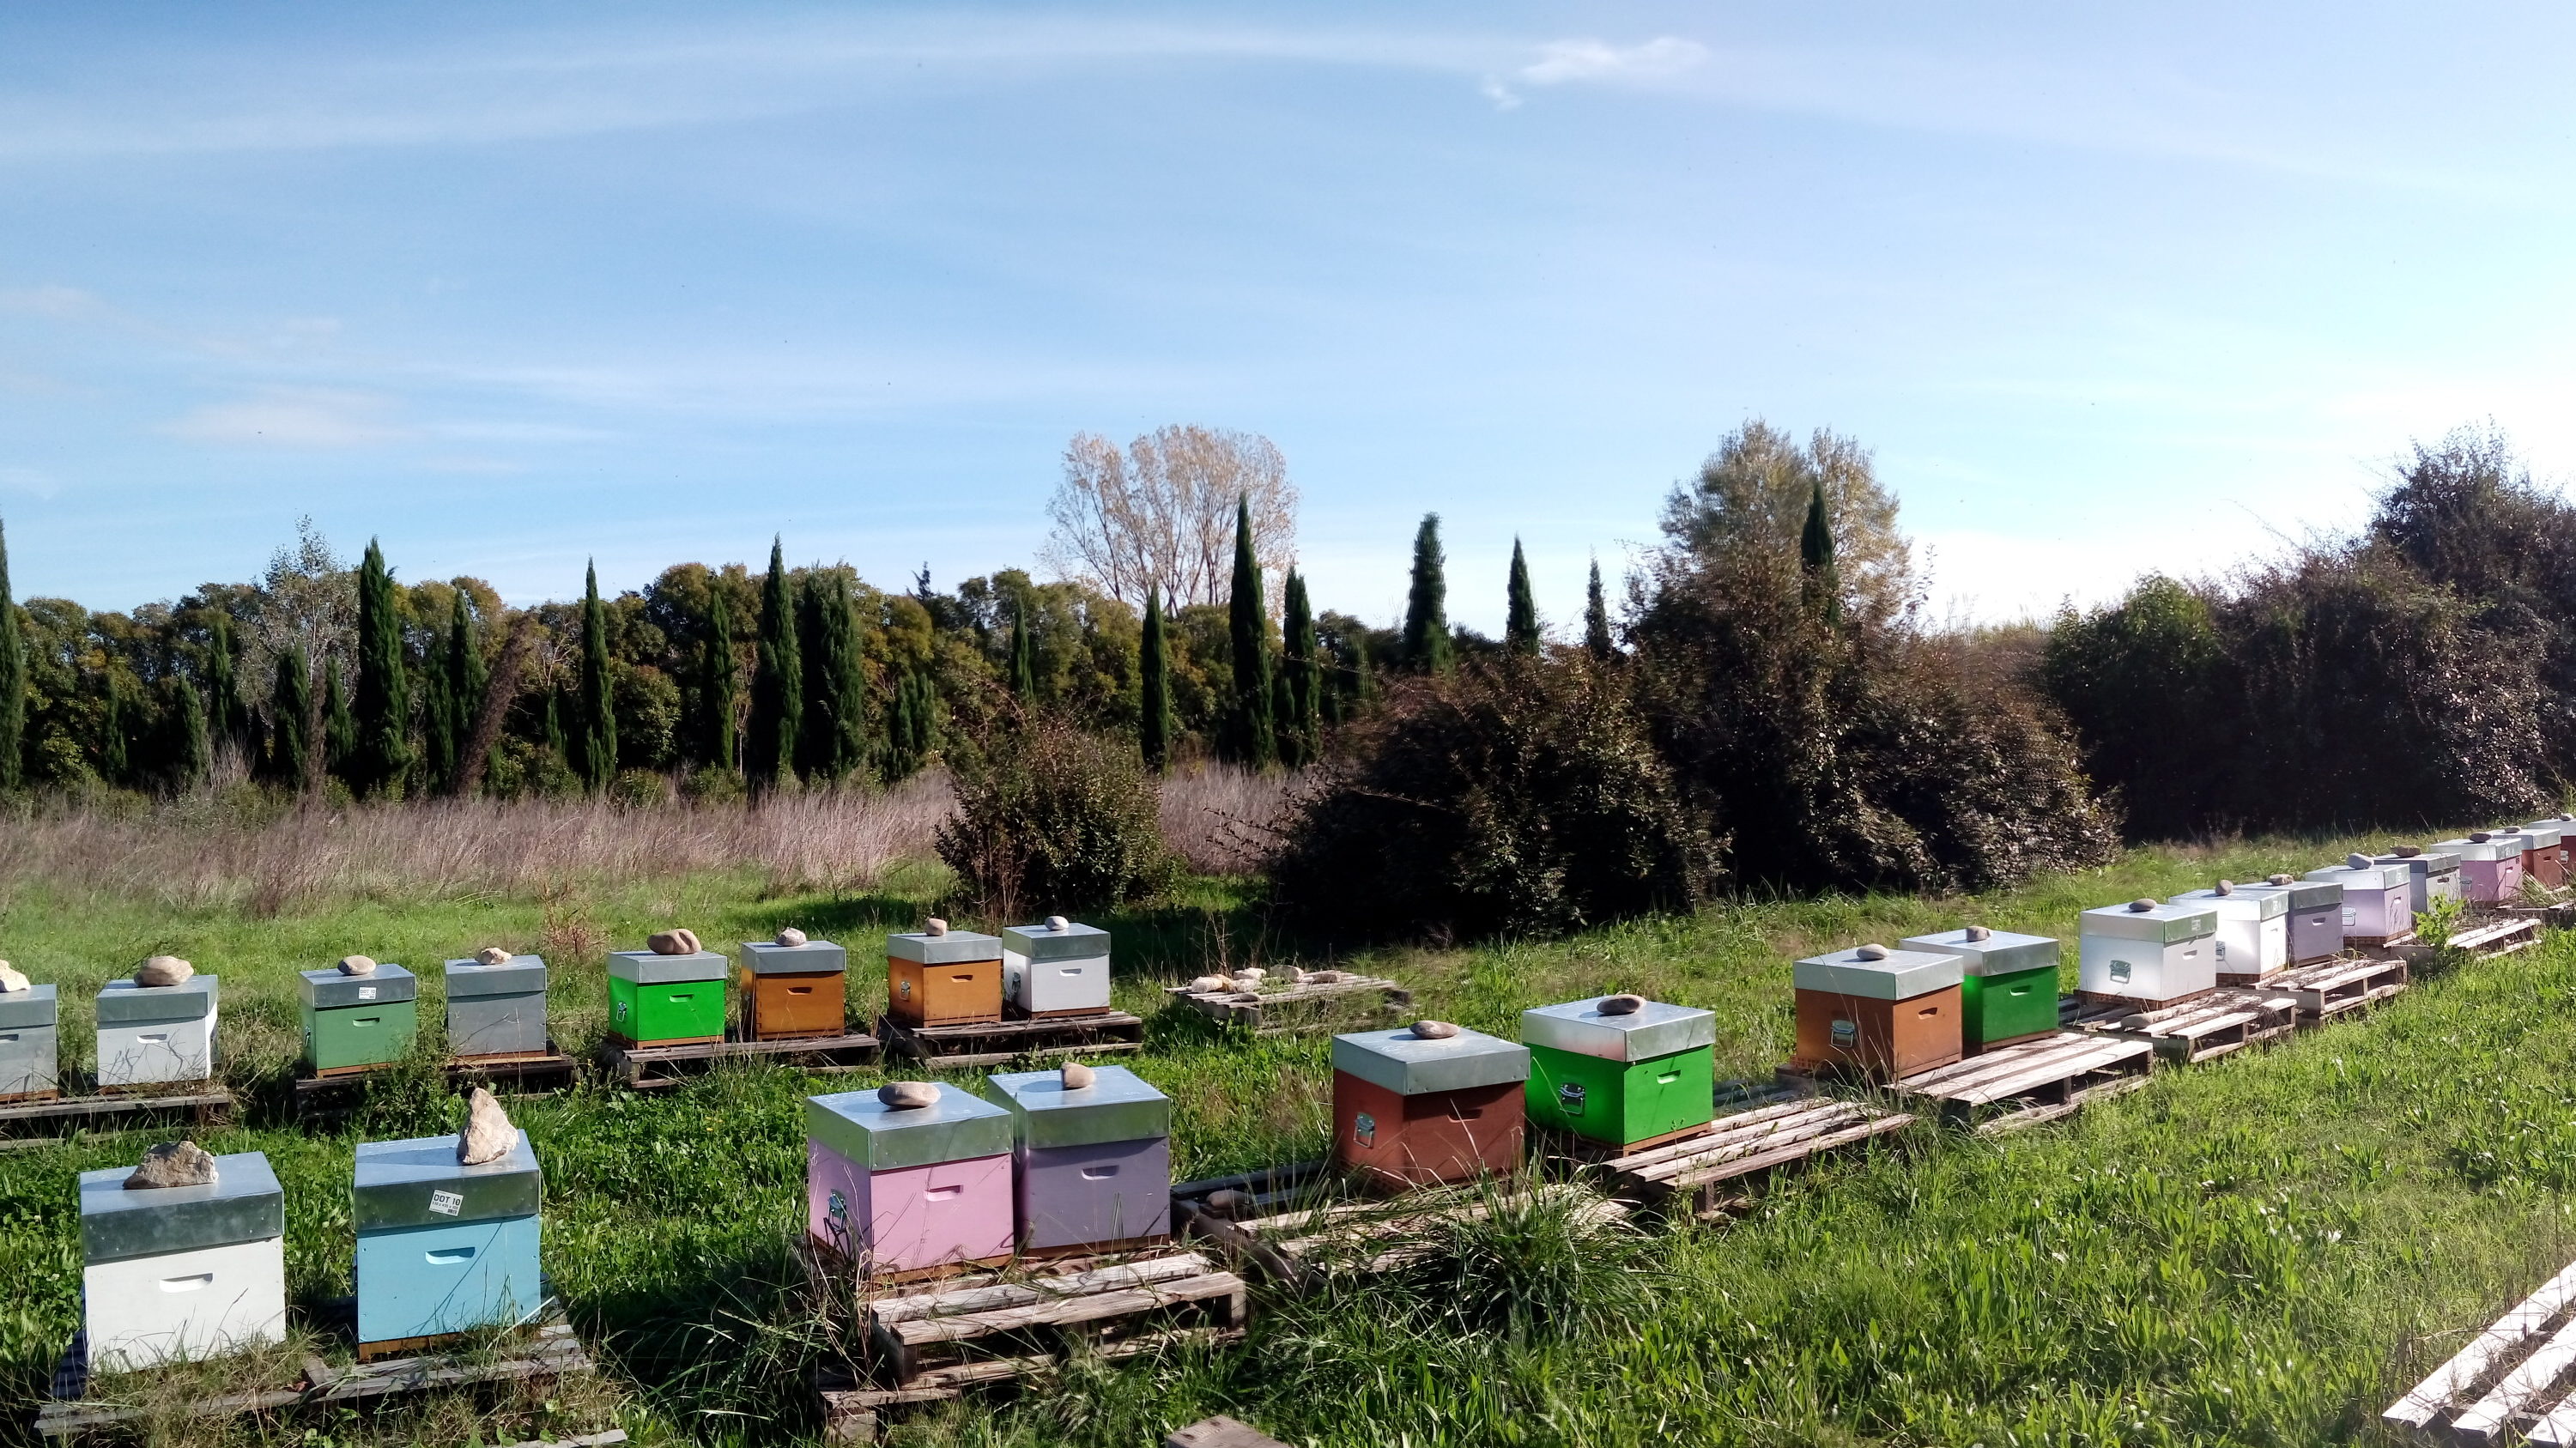 Aperçu des ruches en hivernage sur le rucher principal